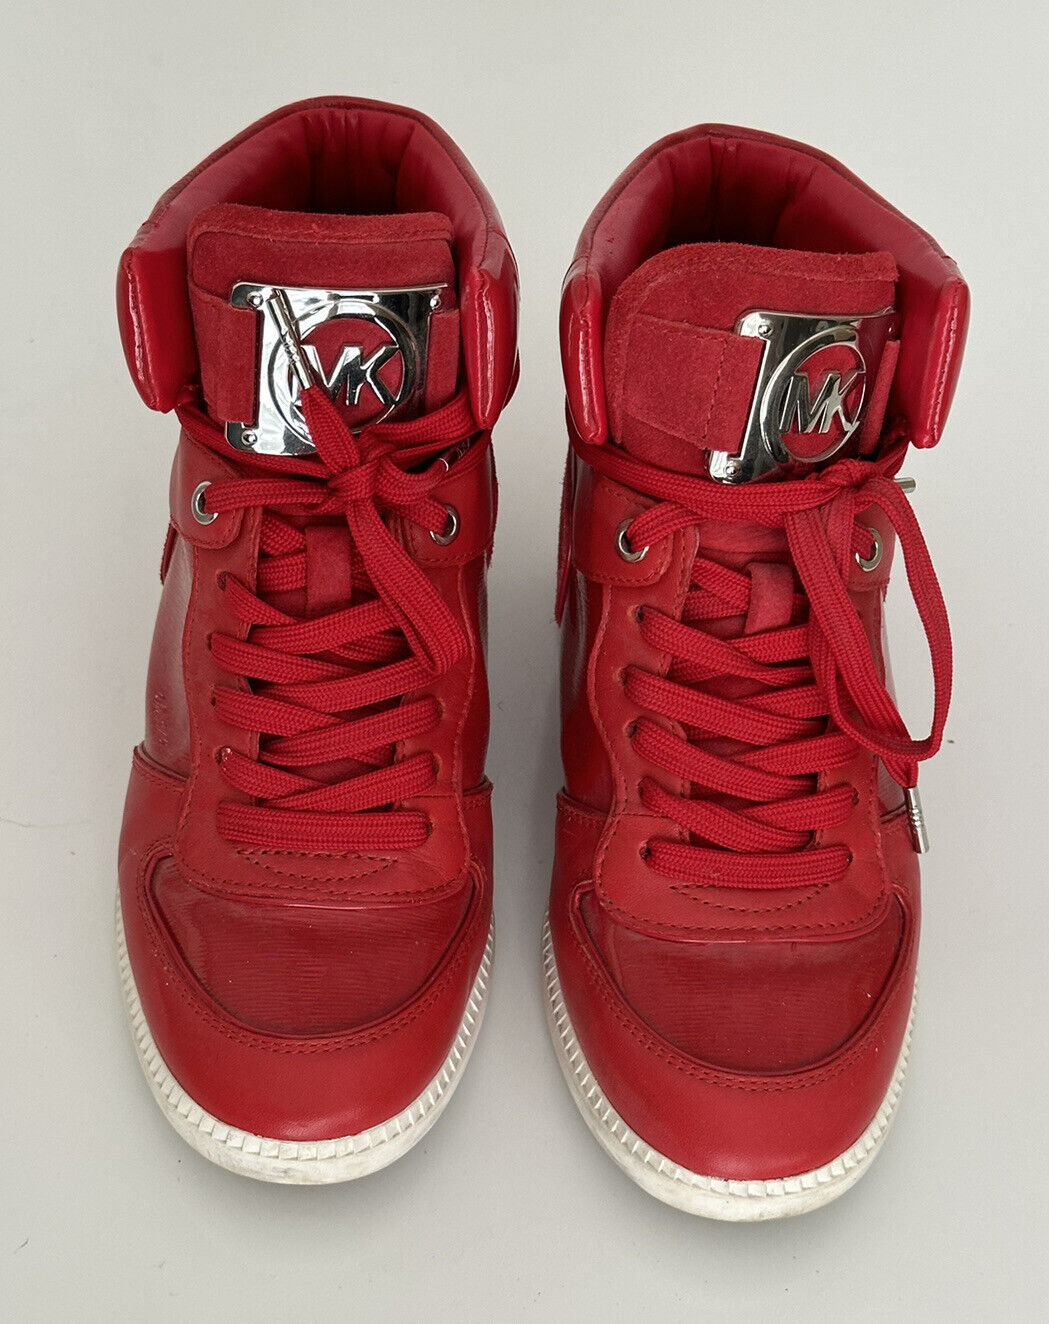 Michael Kors Nikko High Top Ledersneaker Rot Größe 8 US (38,5 Euro)